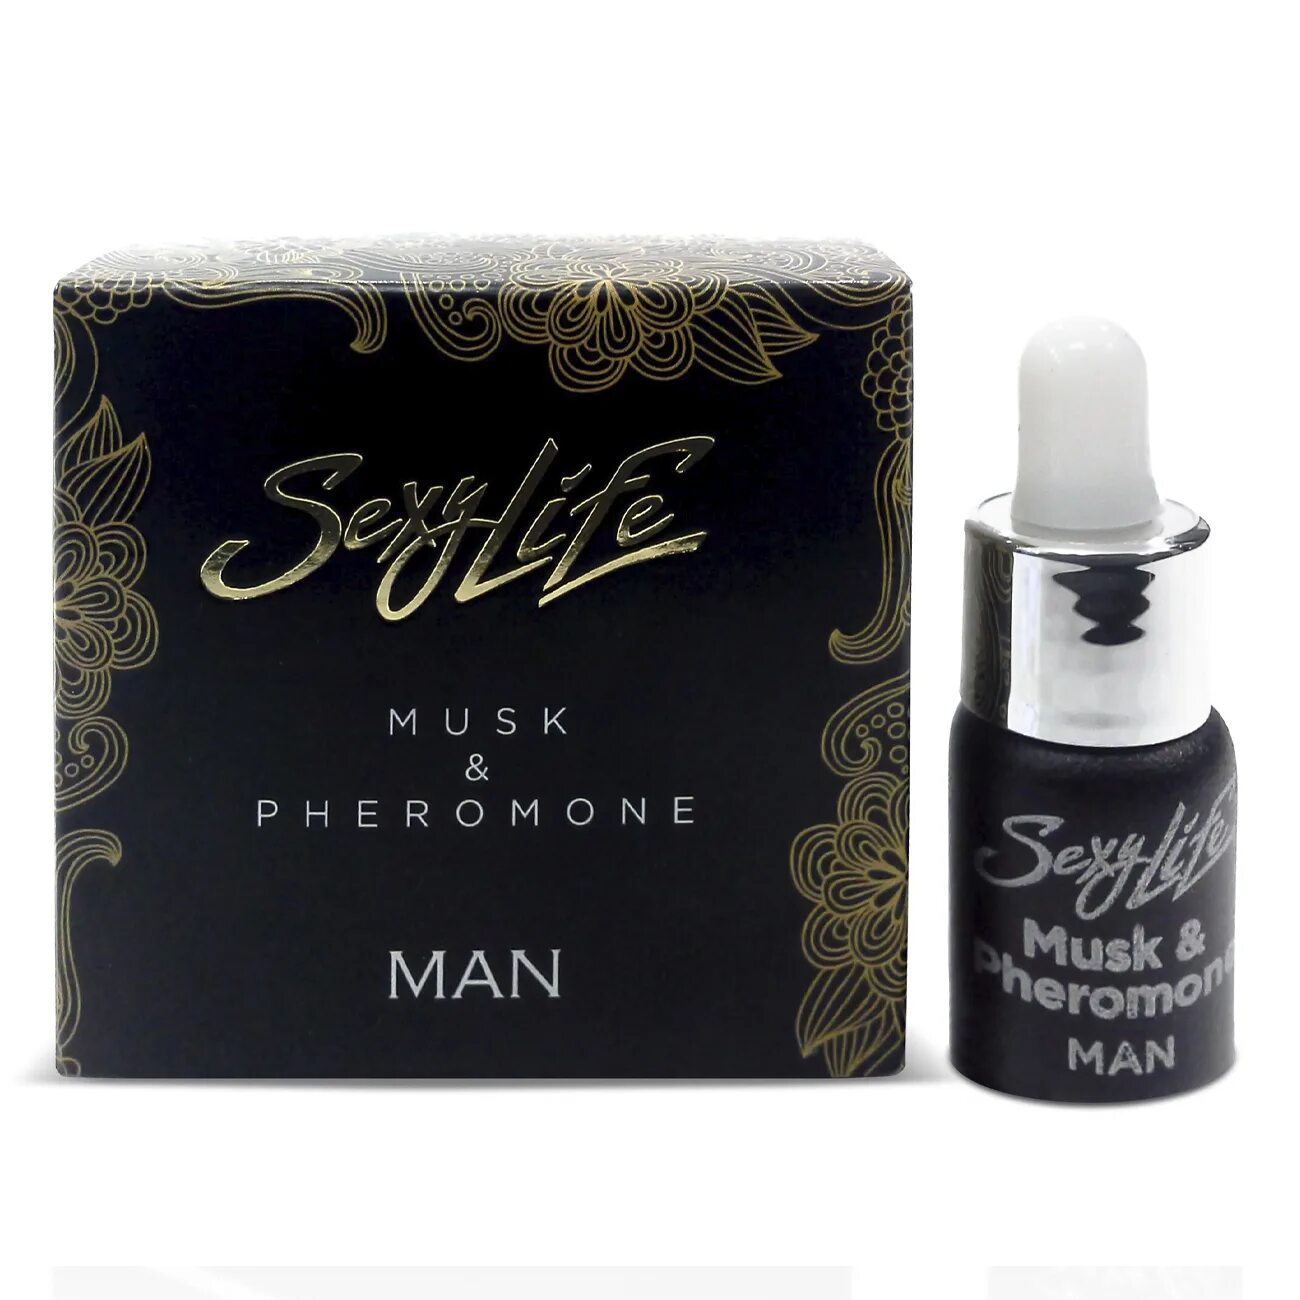 Феромоны женщины для мужчины. Parfume Prestige m мужские духи с феромонами sexy Life № 1, 10 мл. Концентрированные феромоны sexy Life мужские. Musk Pheromone man.